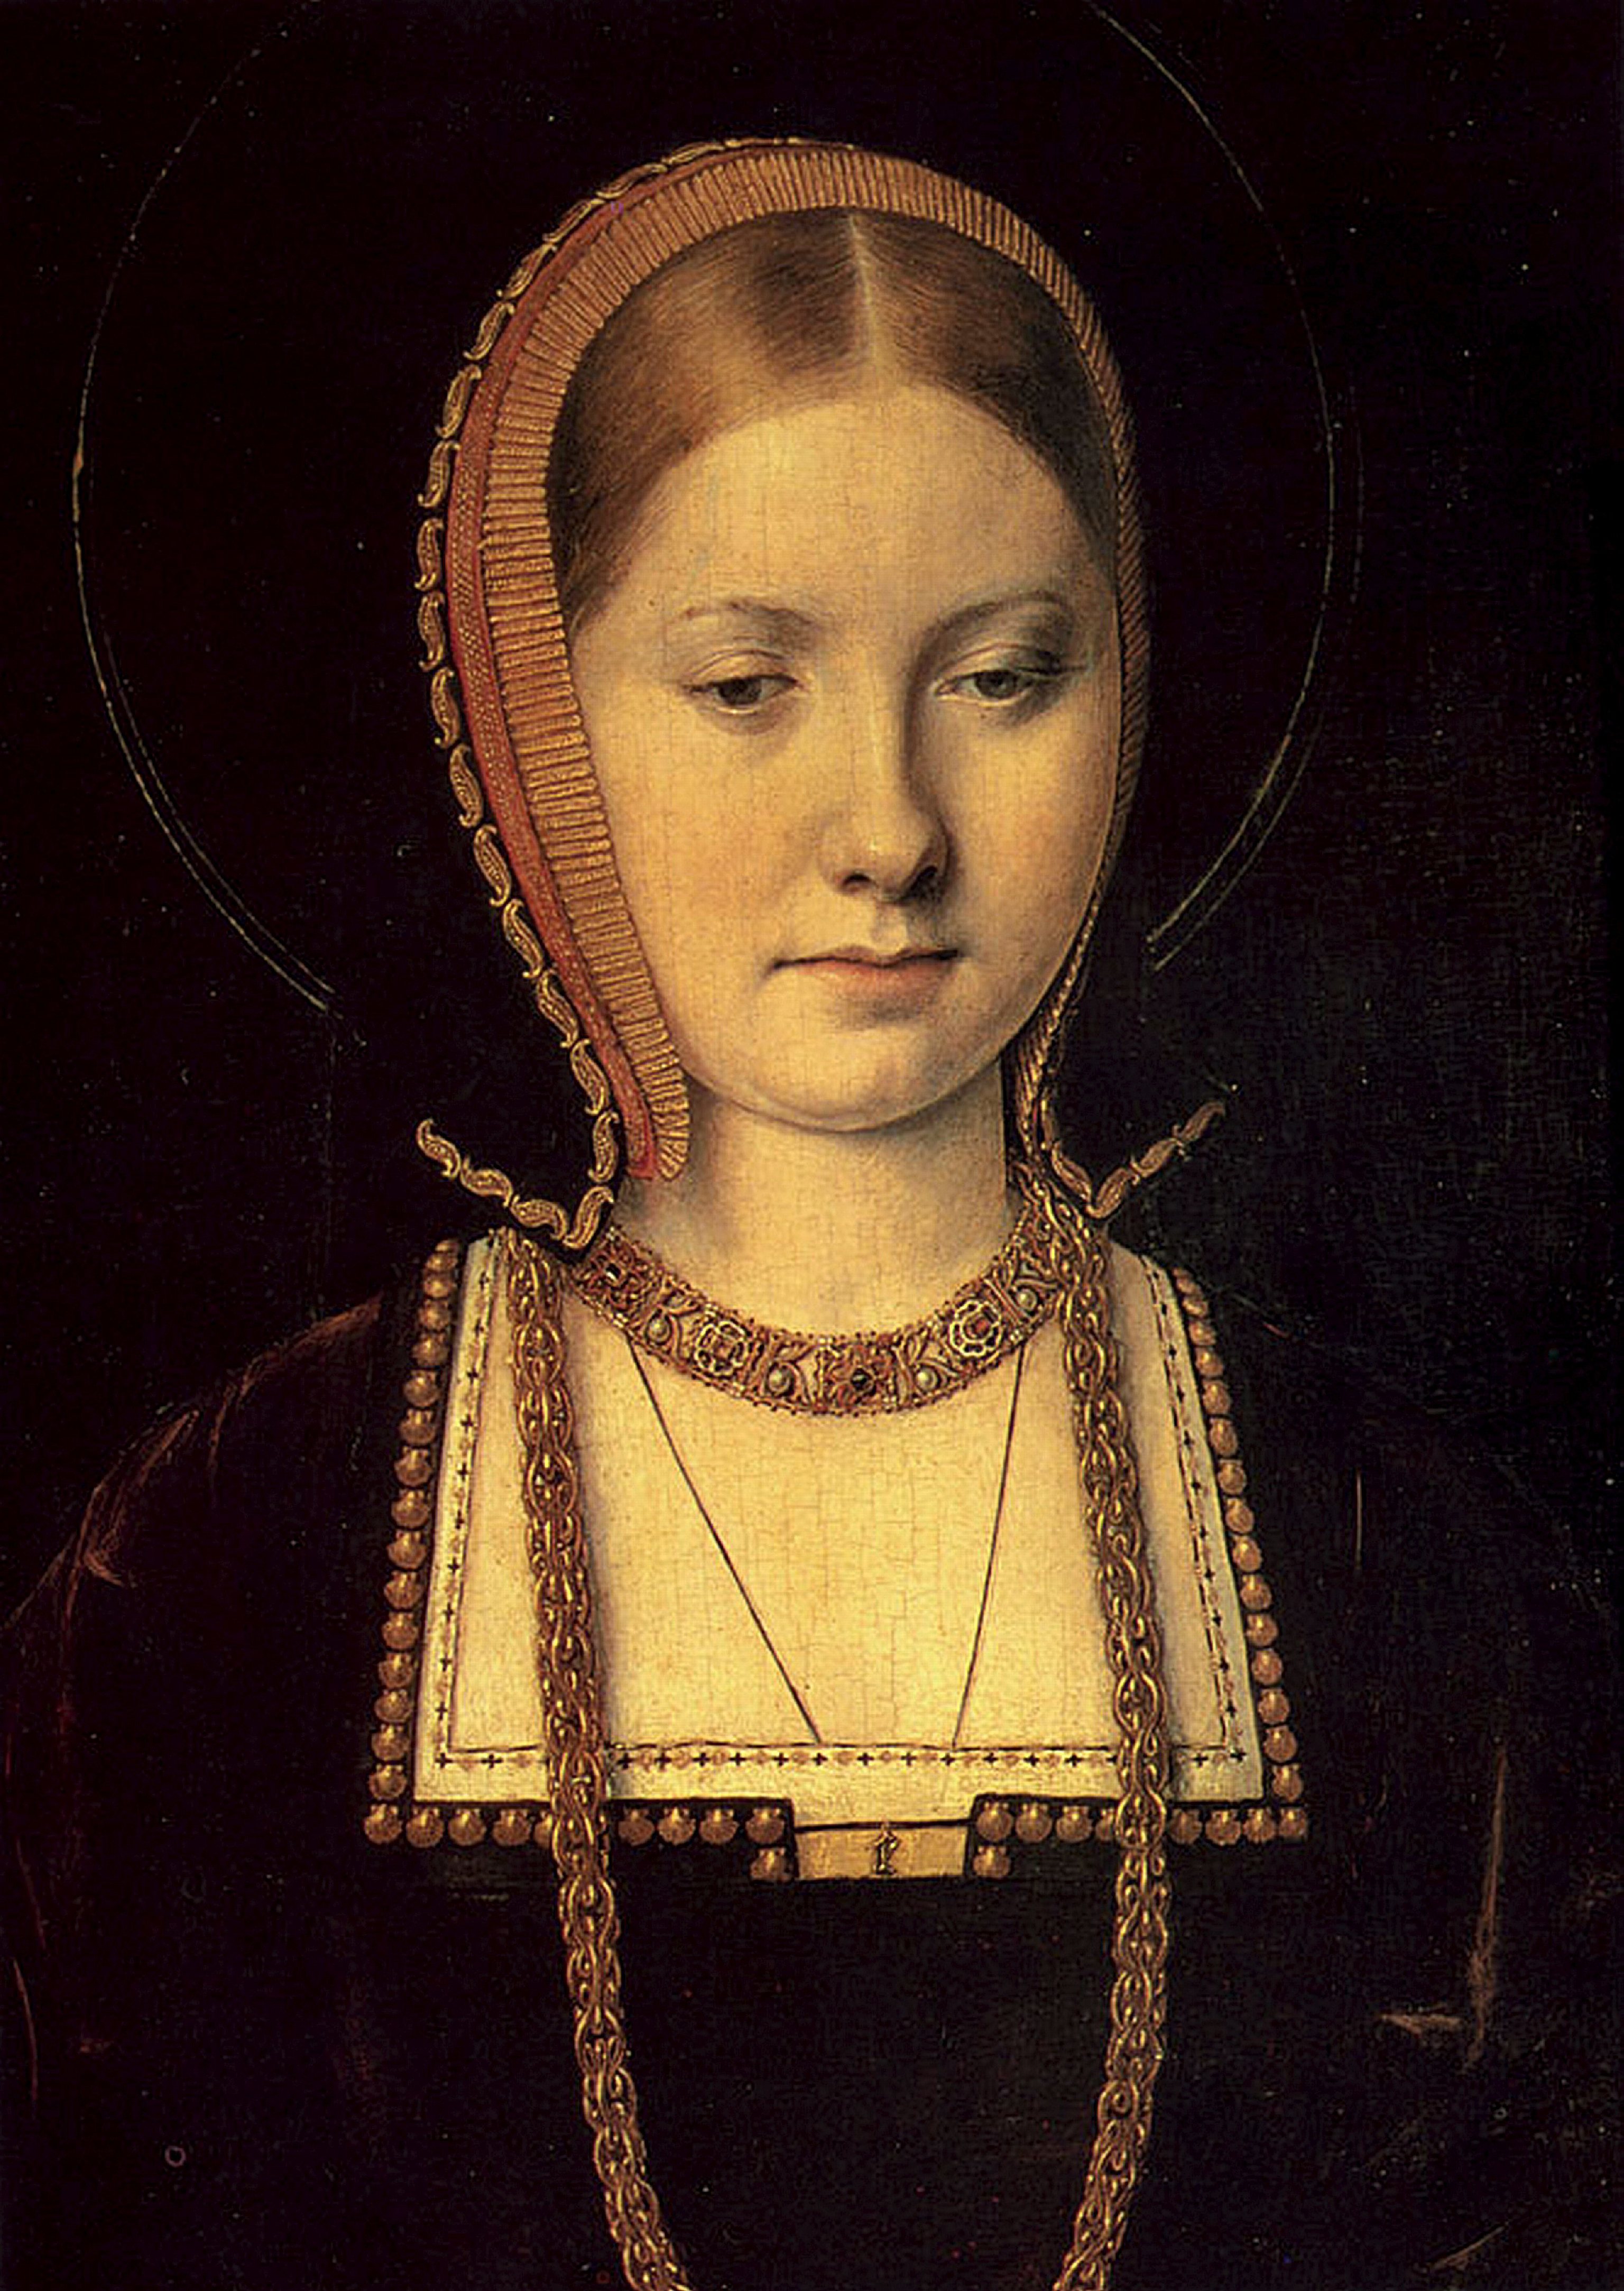 Retrato de Catalina de Arag�n, fechado en 1502.